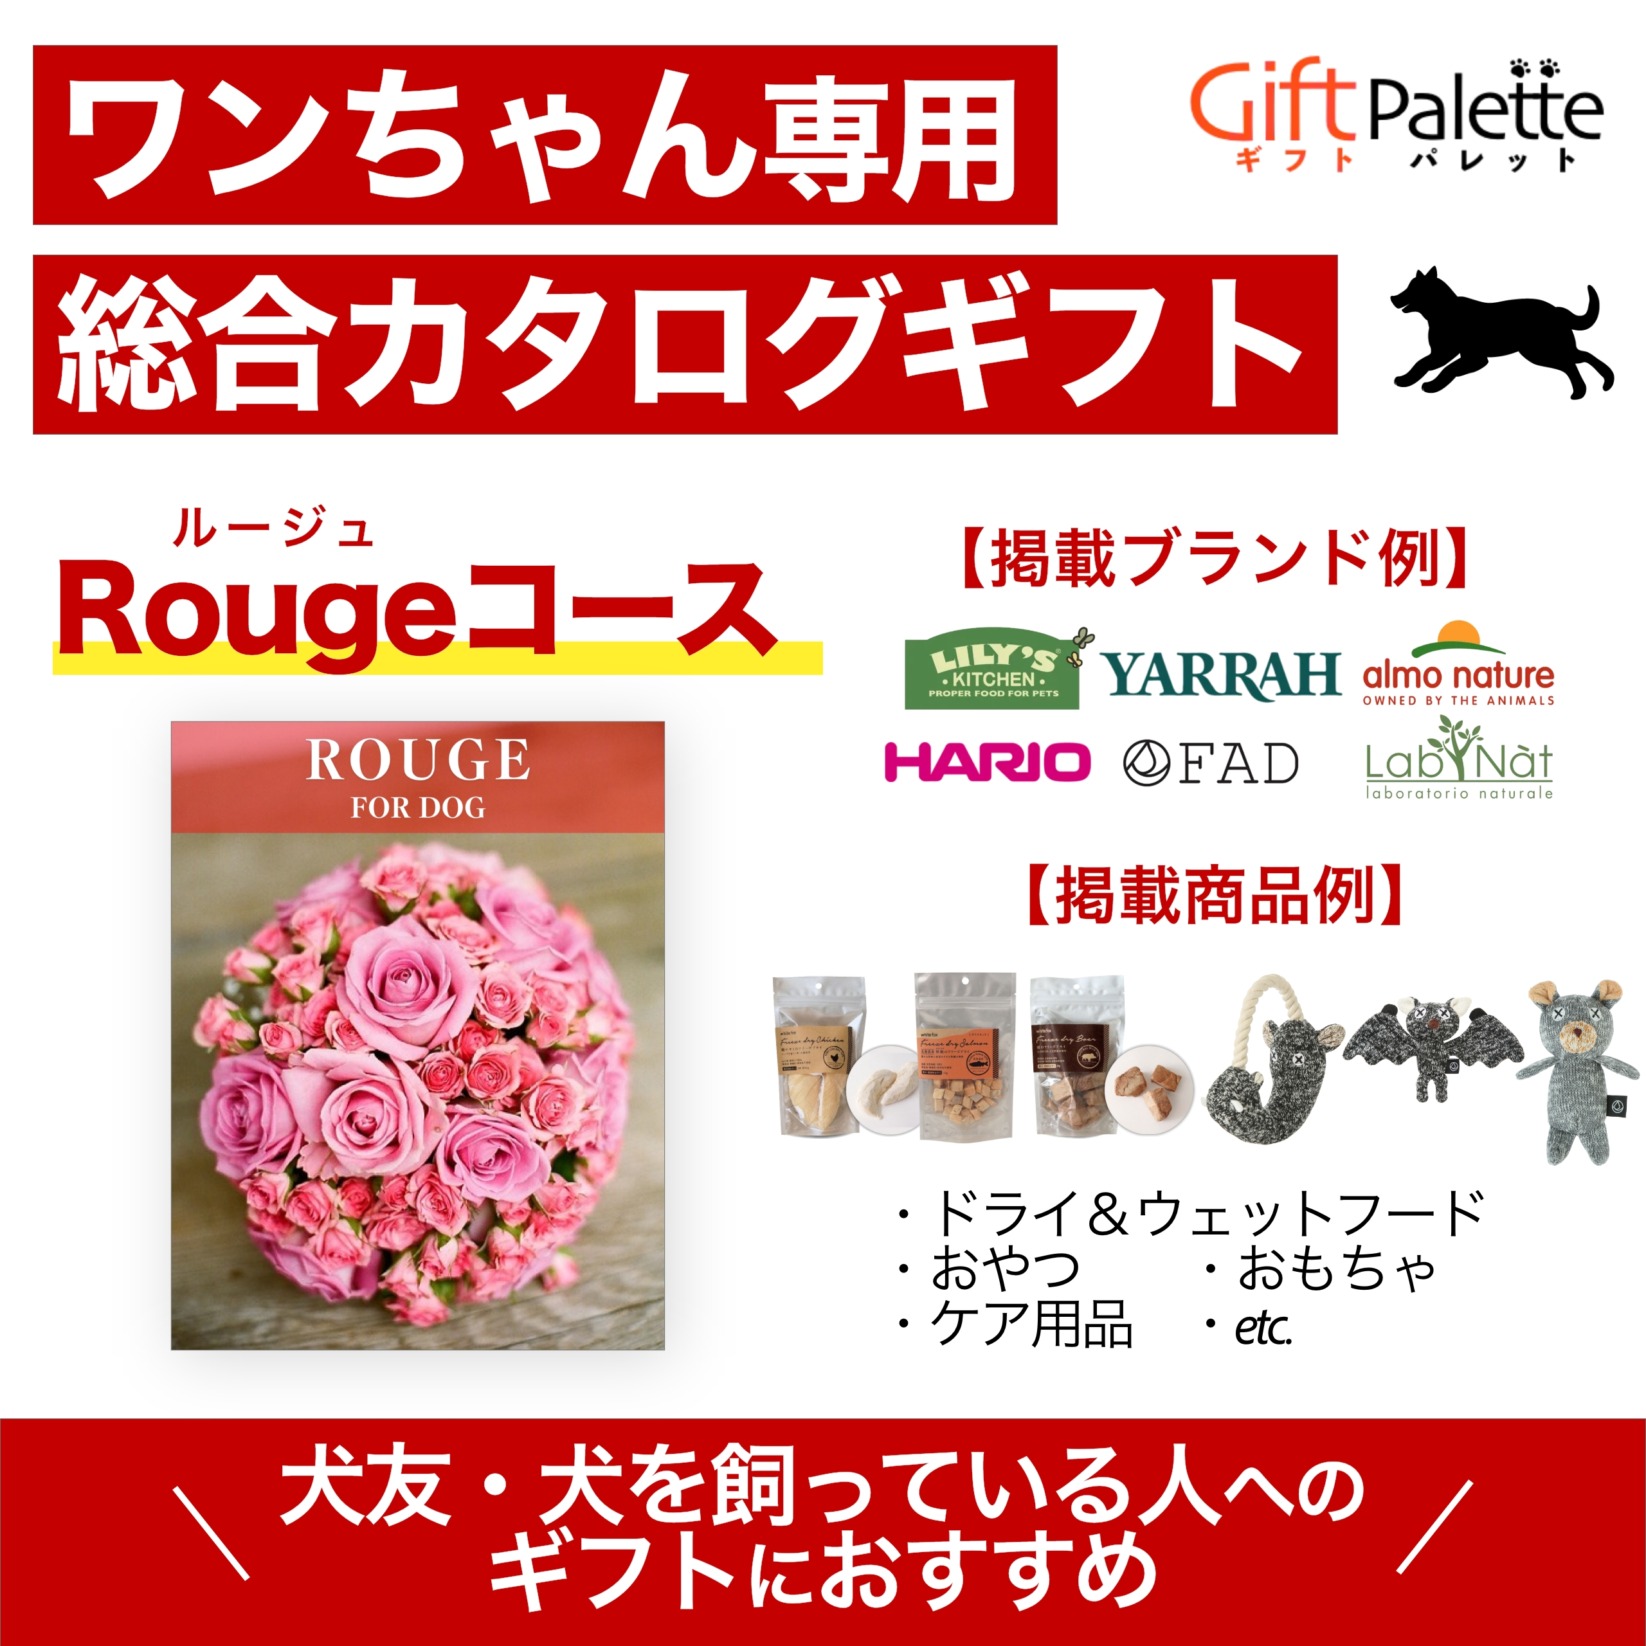 ワンちゃん向け総合オンラインカタログギフト – Rougeコース